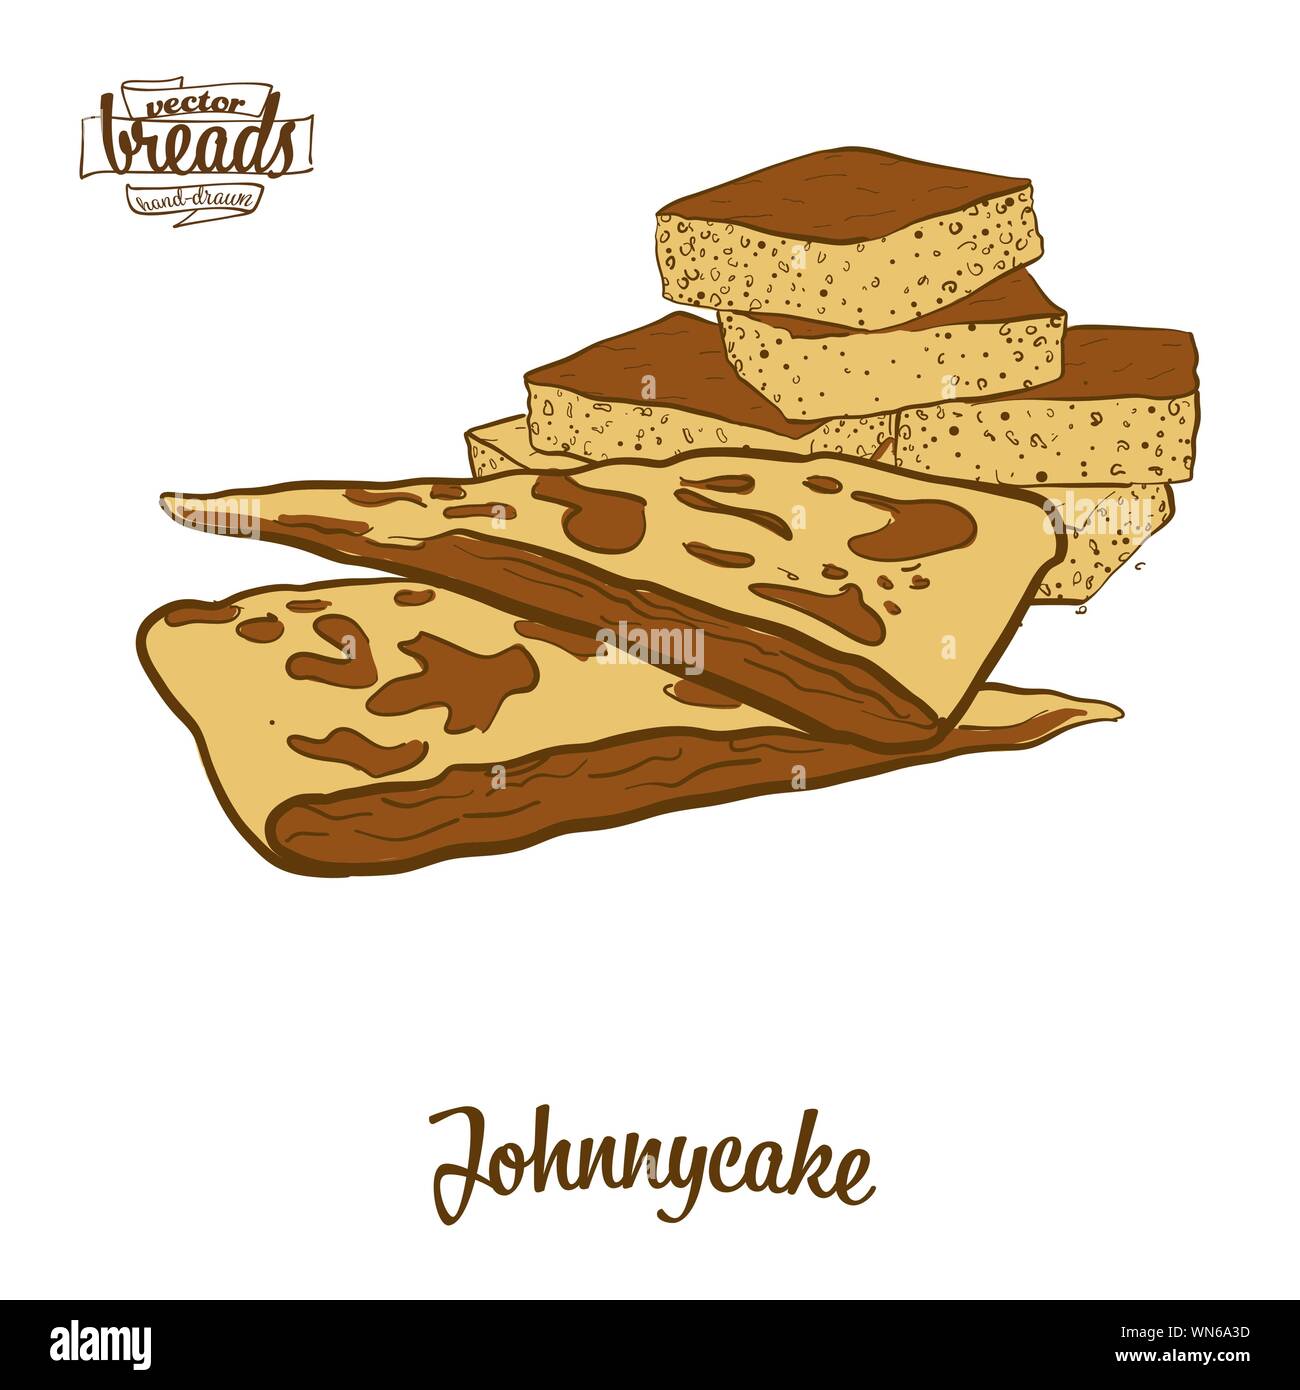 Farbige Zeichnung der Johnnycake Brot. Vector Illustration von Fladenbrot Essen, in der Regel in Nordamerika bekannt. Farbige Brot Skizzen. Stock Vektor